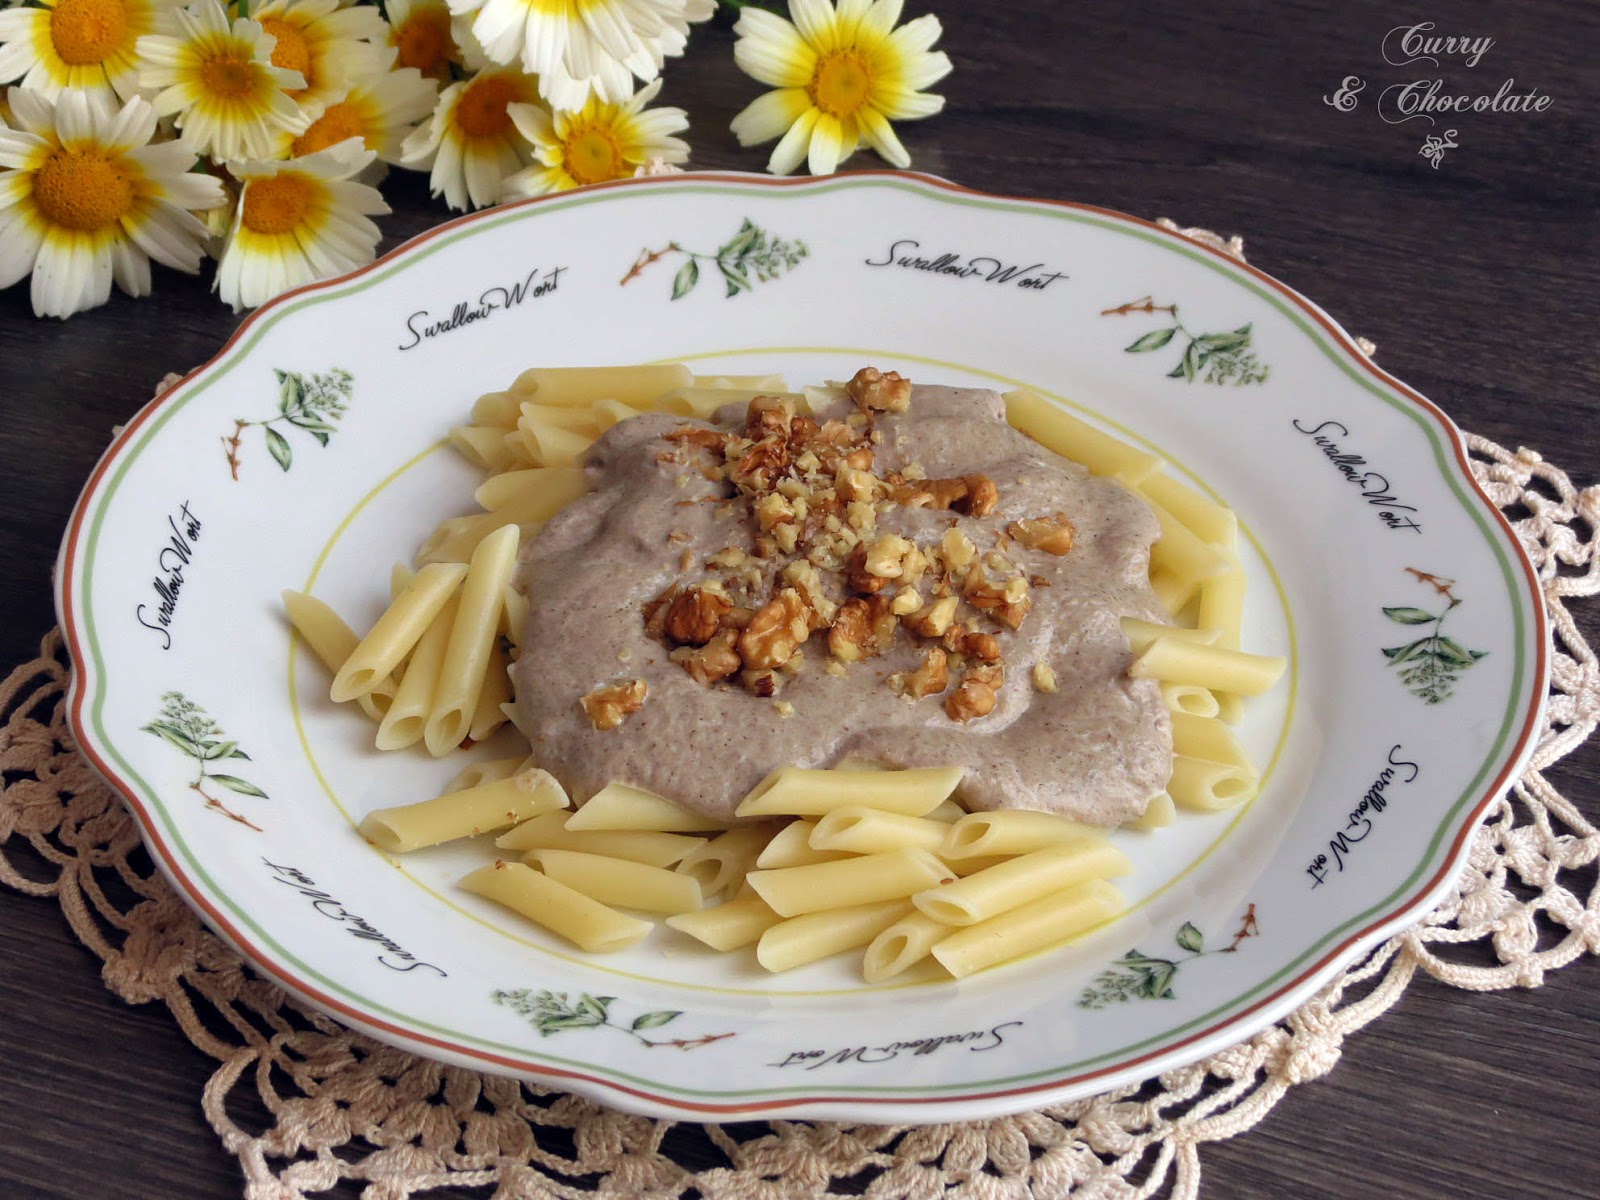 Pasta con crema de champiñones y nueces - Pasta with mushroom cream sauce and walnuts 